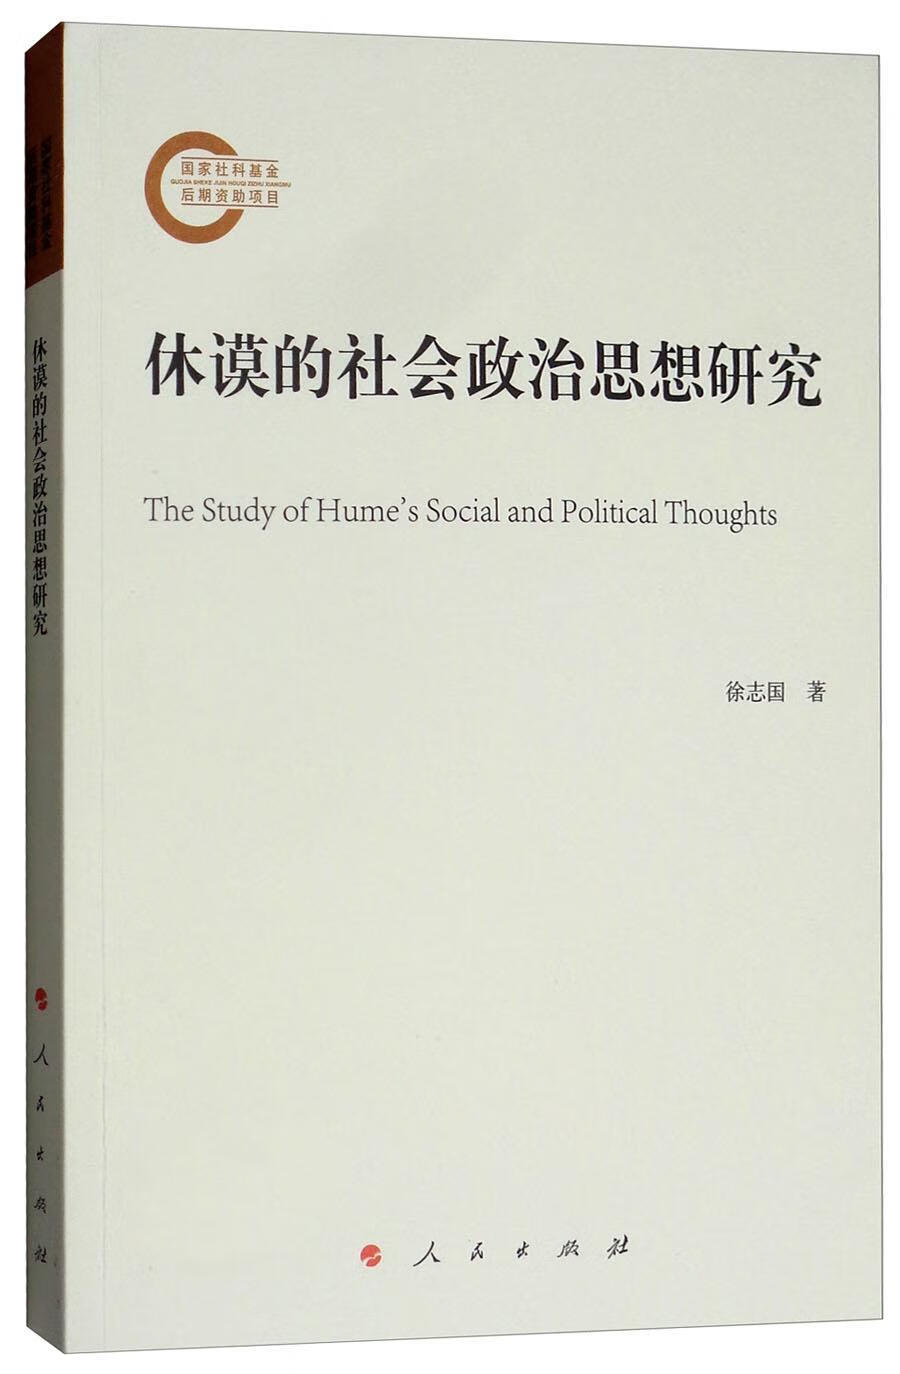 休谟的社会政治思想研究徐志国哲学9787010186733 mobi格式下载